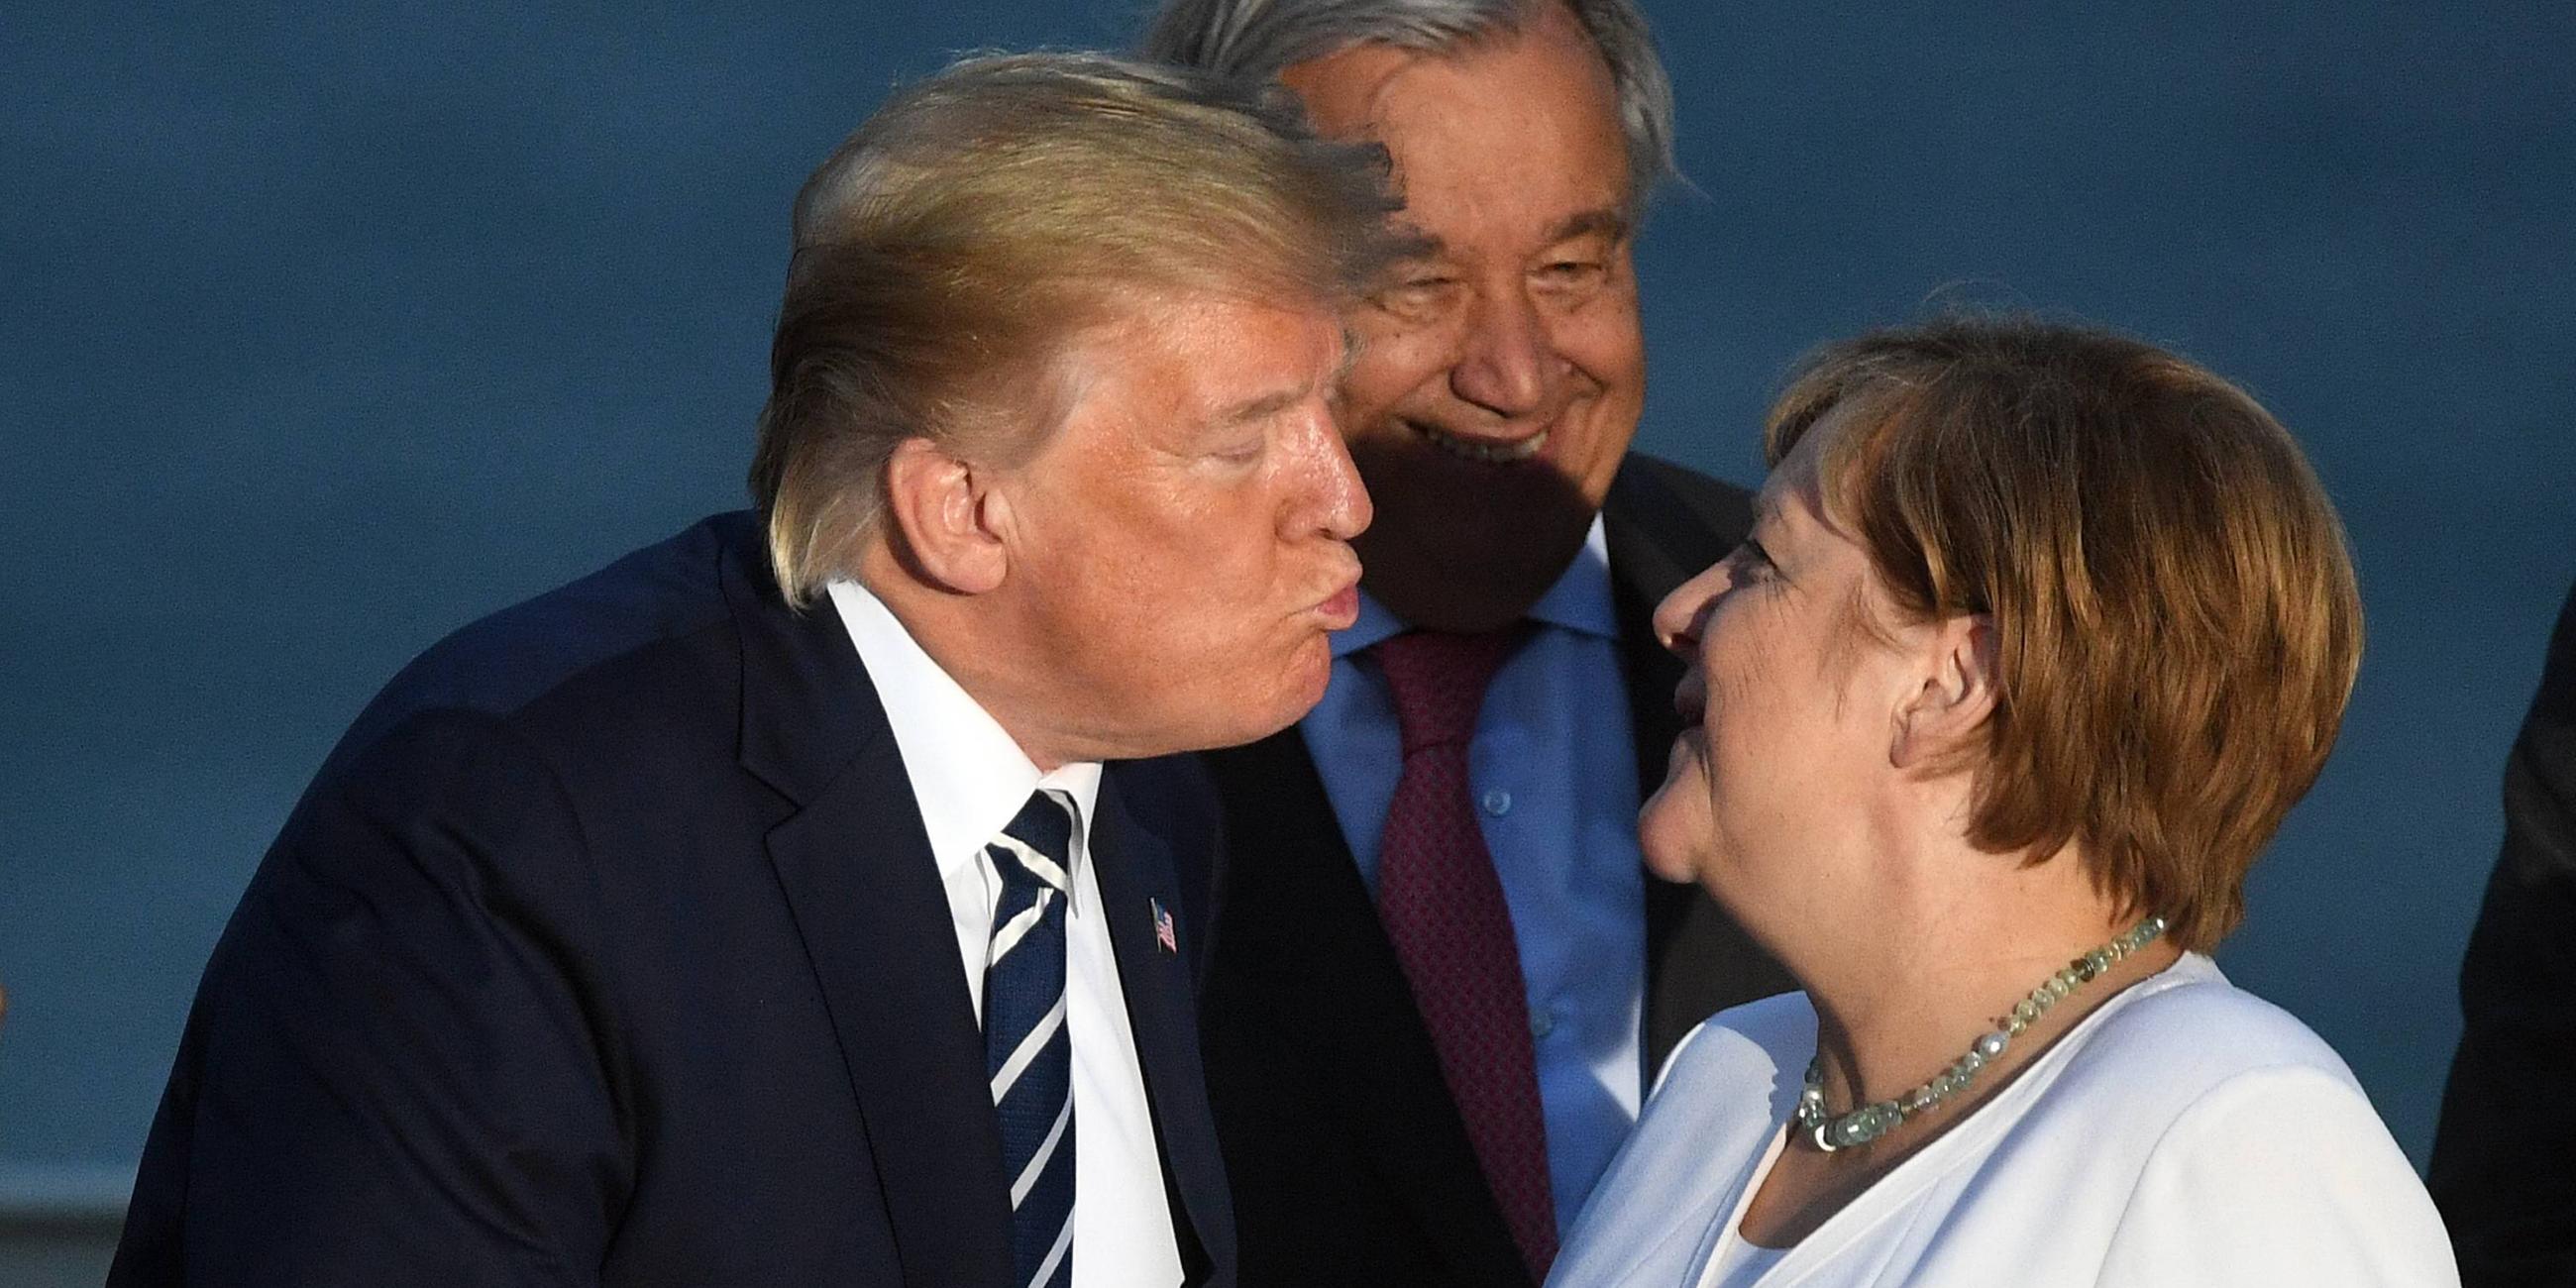 Rückschau G7-Gipfel Biarritz